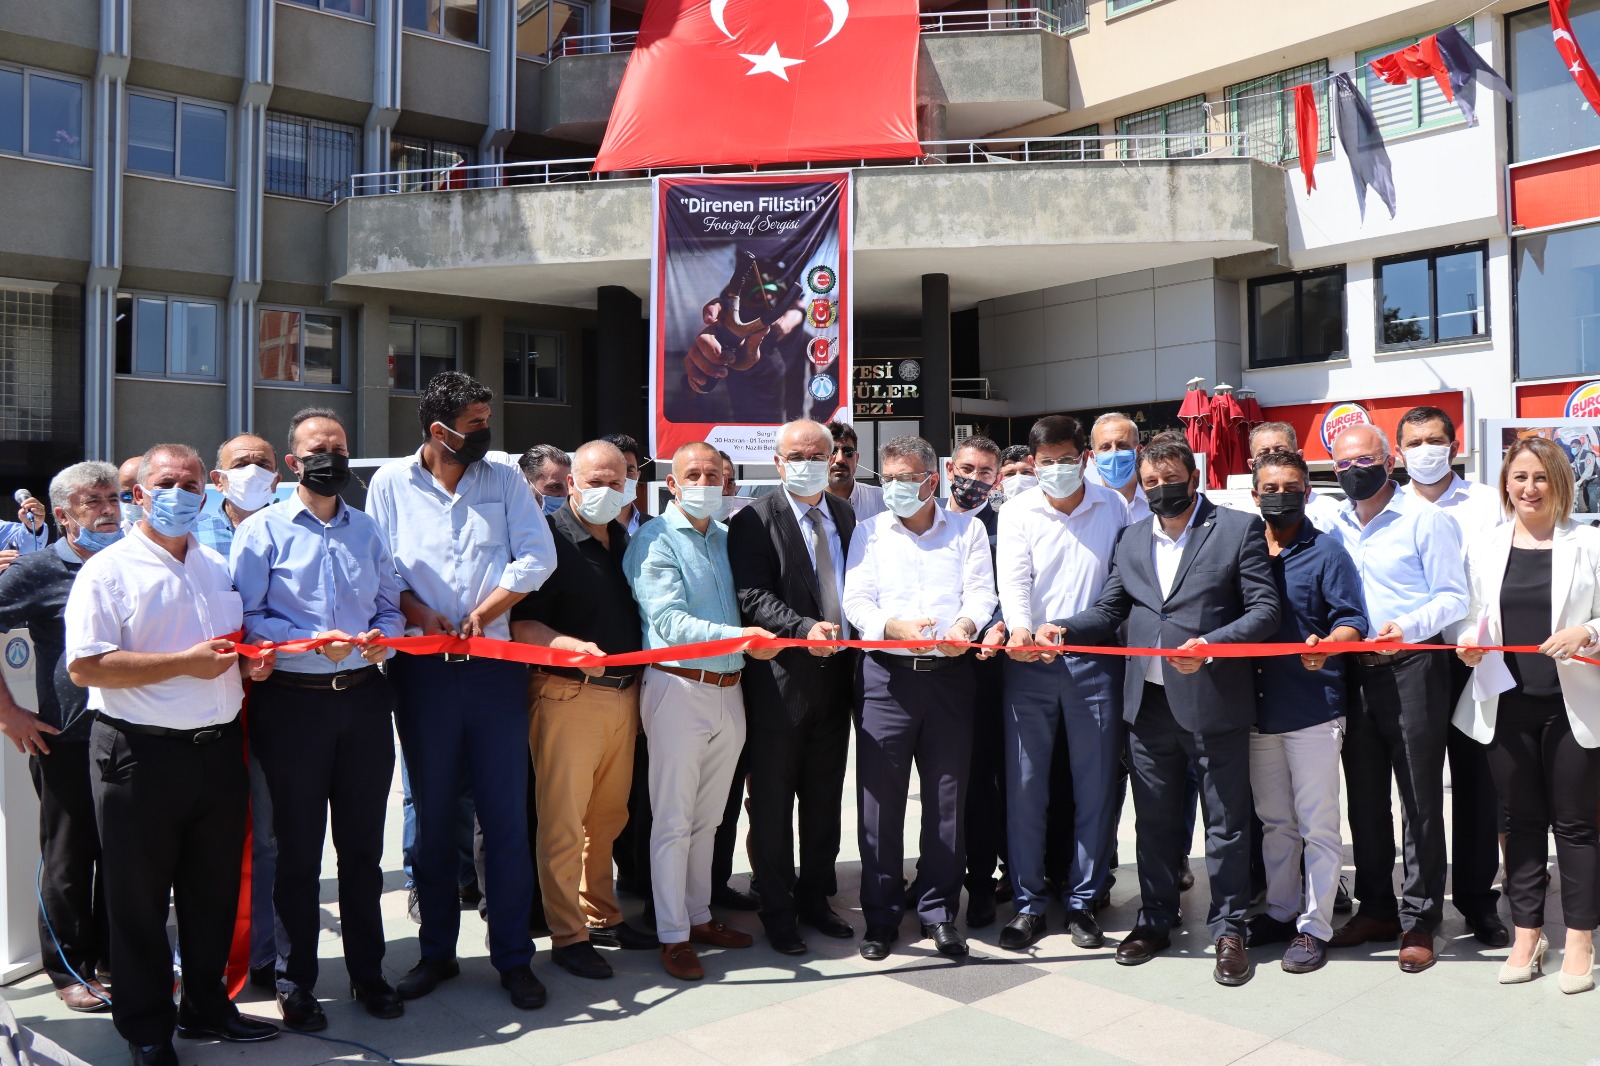  Nazilli Belediye Başkanı Özcan, ‘Direnen Filistin’ Sergisine Katıldı